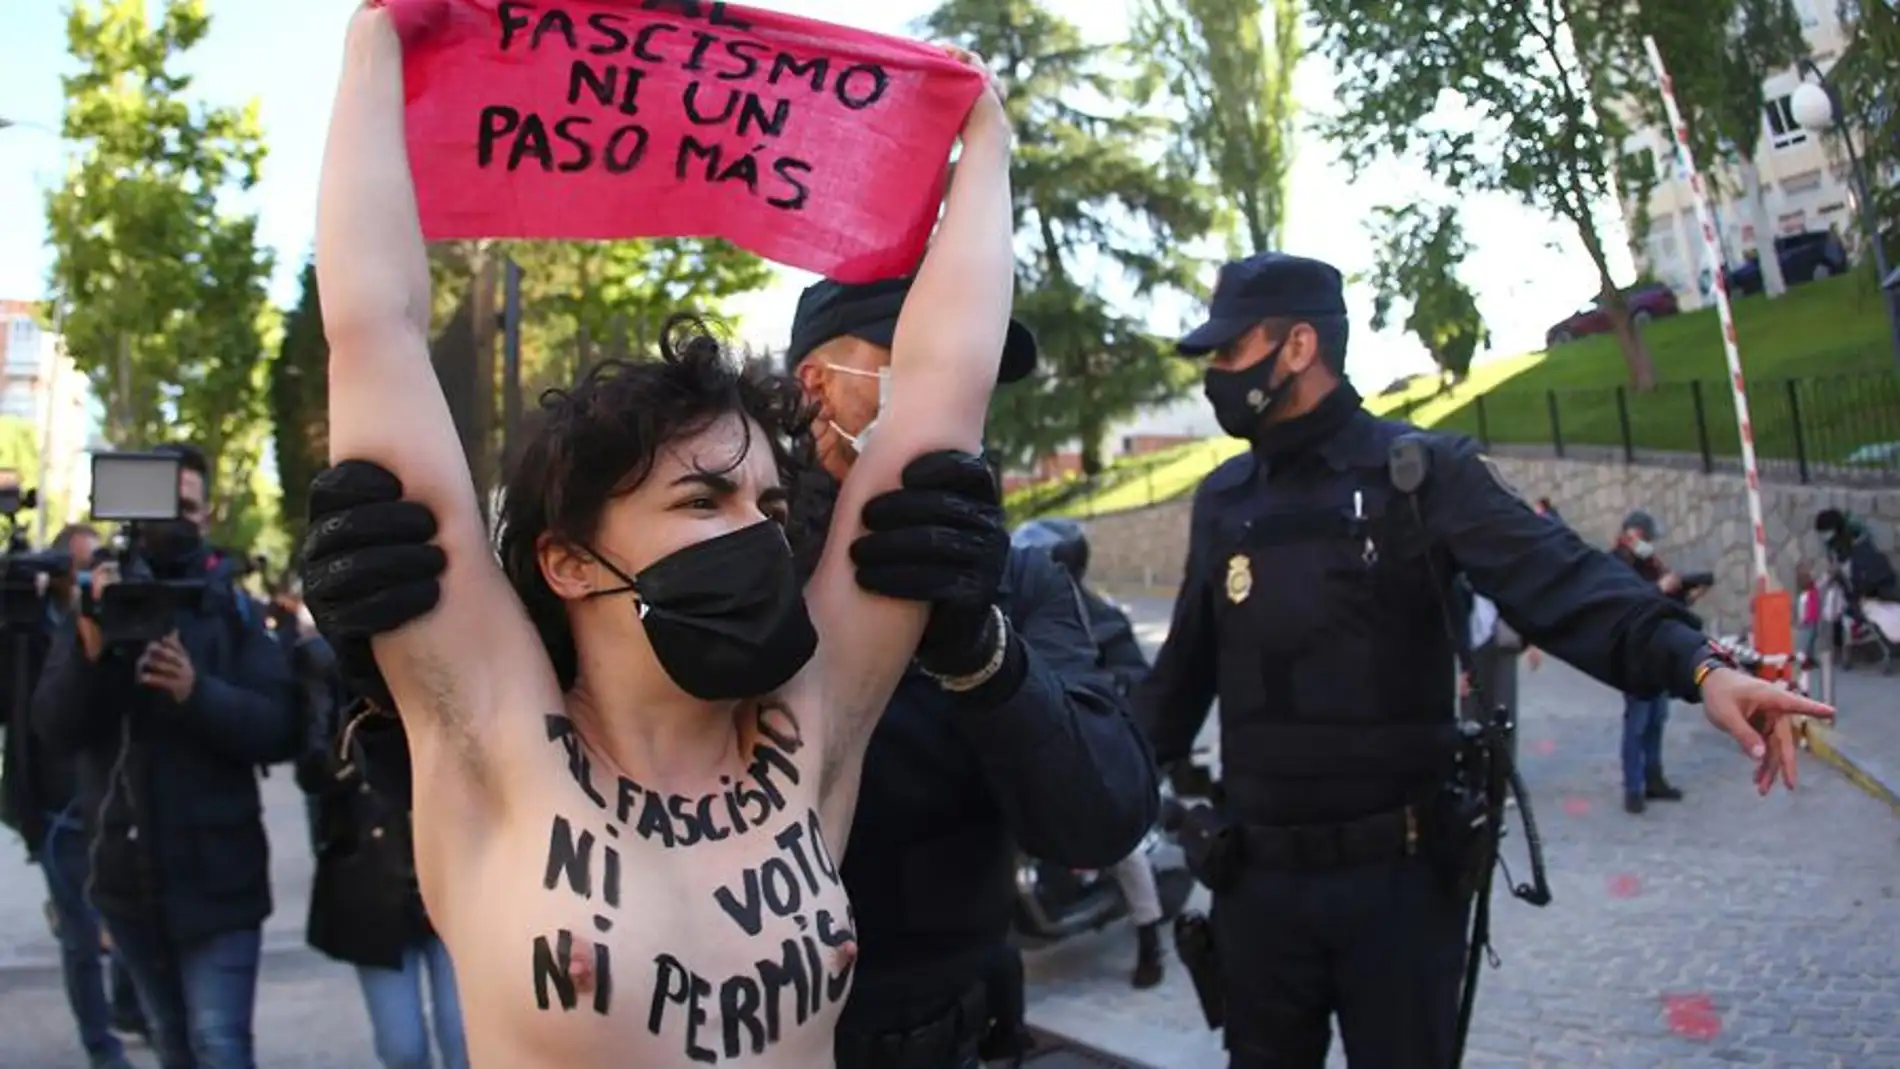 Activistas de Femen irrumpen en el colegio donde vota Rocío Monasterio: "Al  fascismo, ni voto ni permiso" | Onda Cero Radio